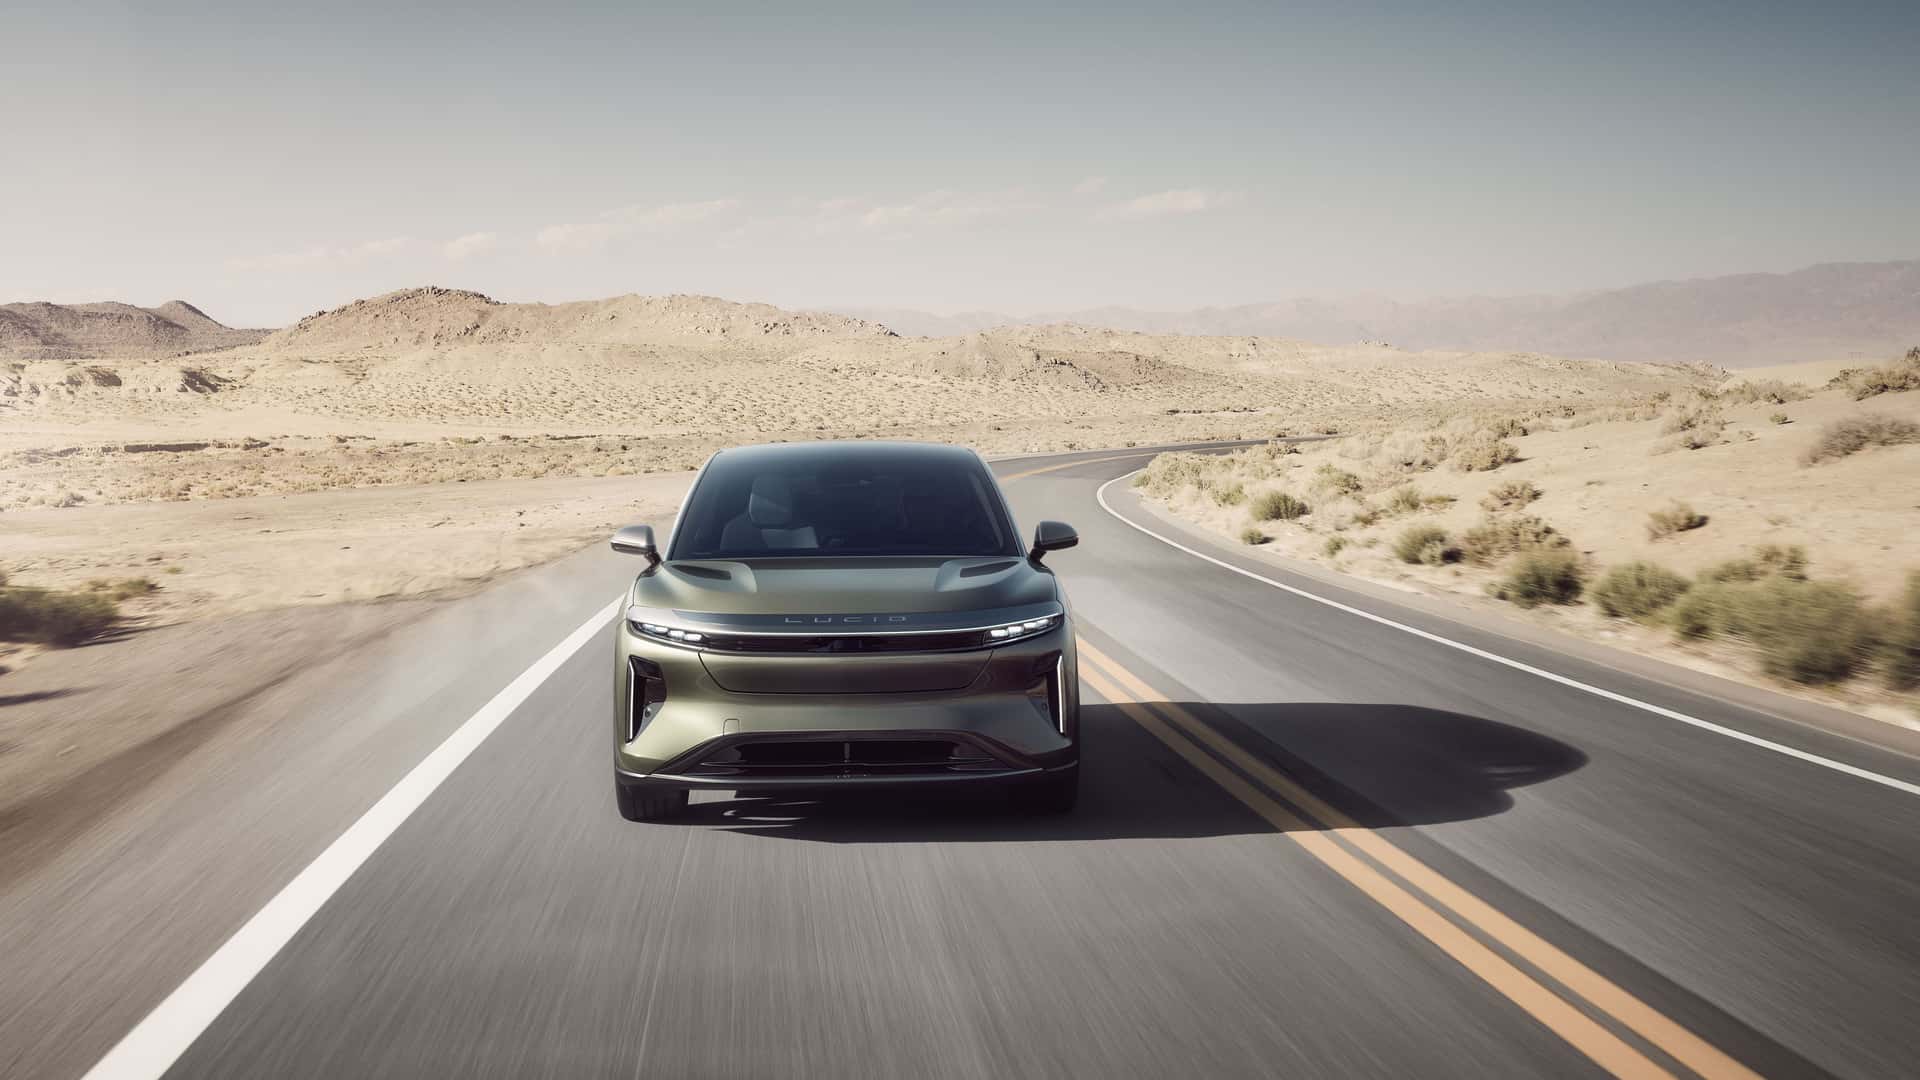 لوسيد جرافيتي SUV الكهربائية الفاخرة تنطلق رسمياً بمدى يتجاوز 700 كيلومتر وتسارع منافس للسيارات الخارقة 25